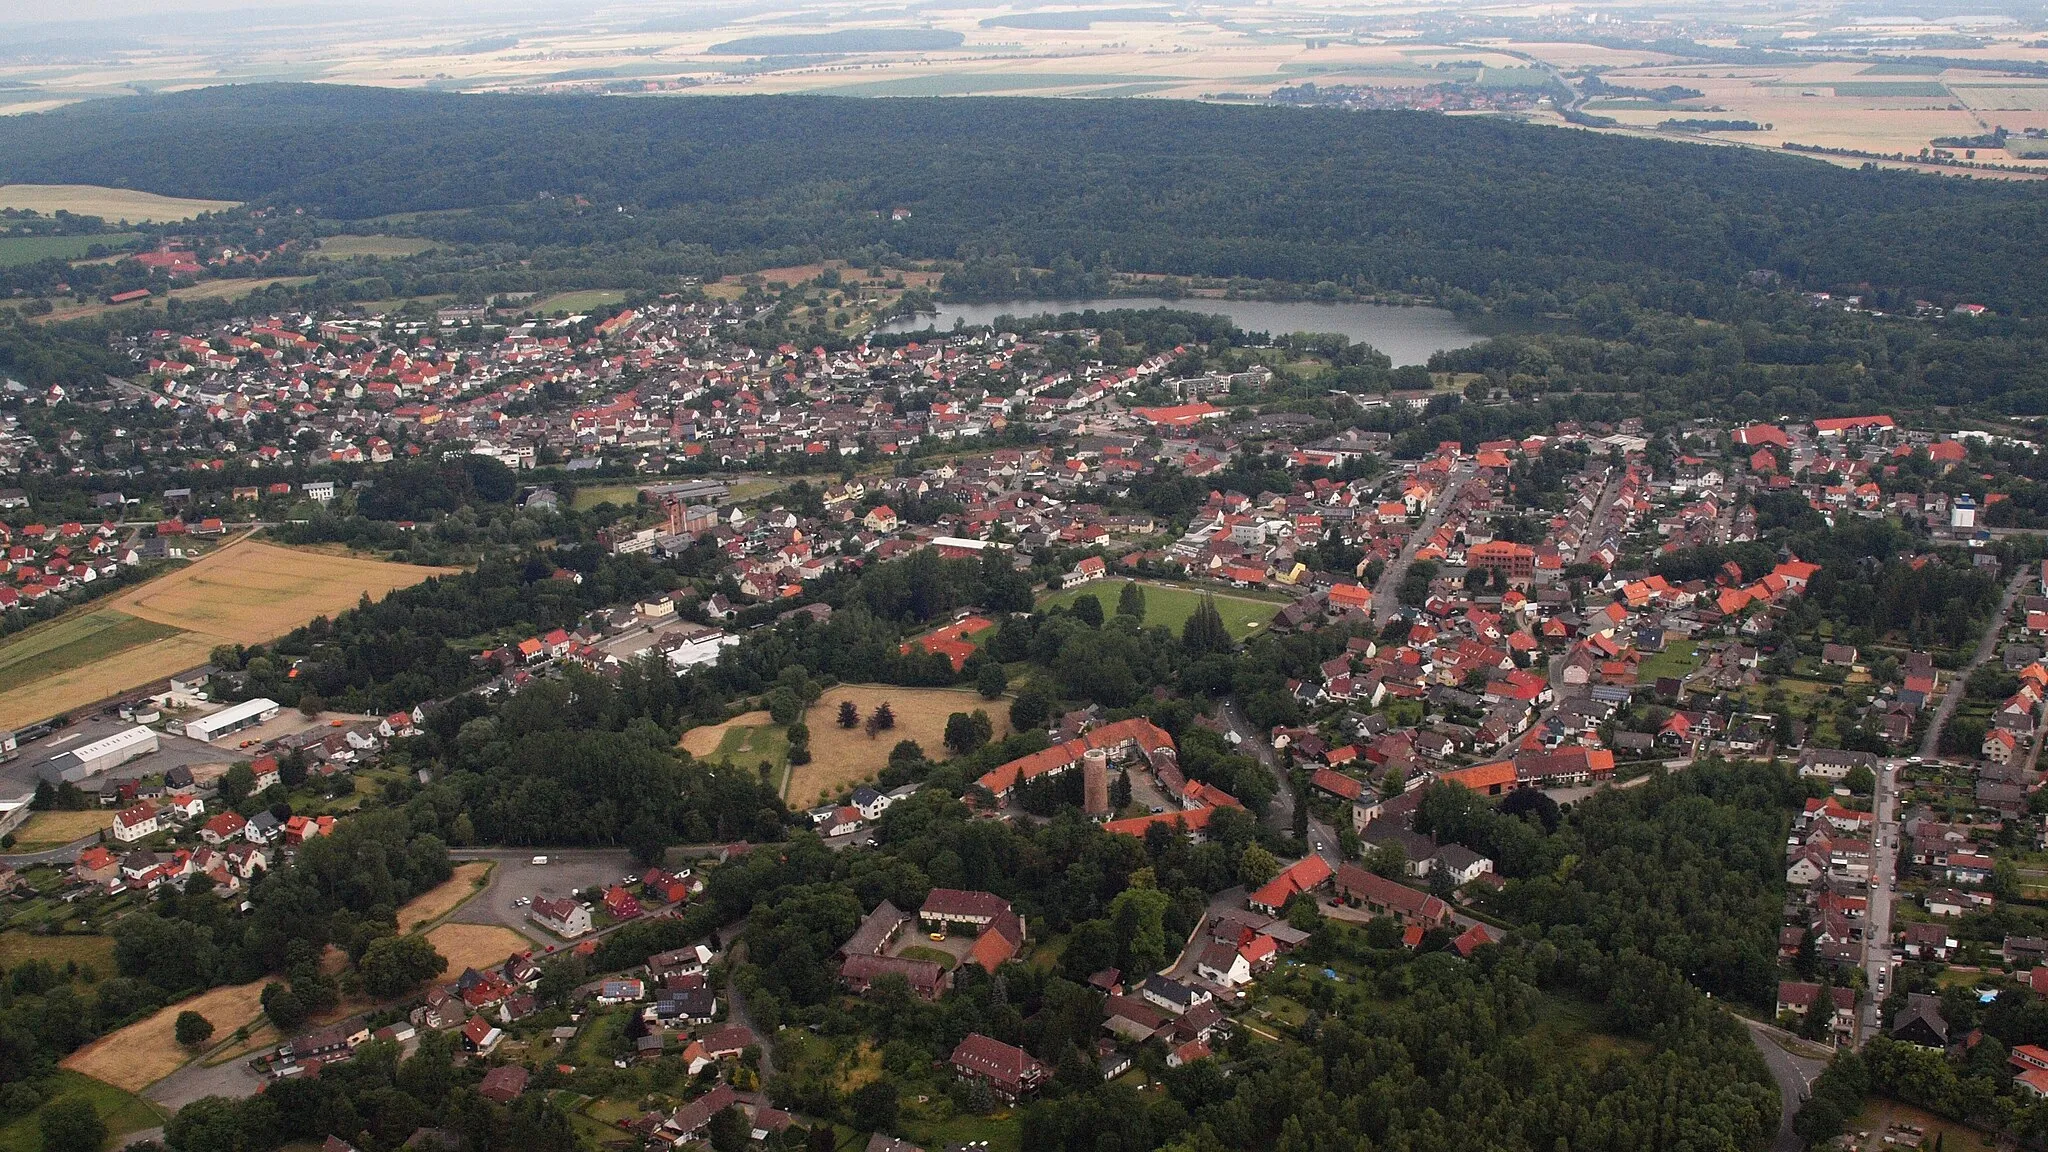 Image of Vienenburg